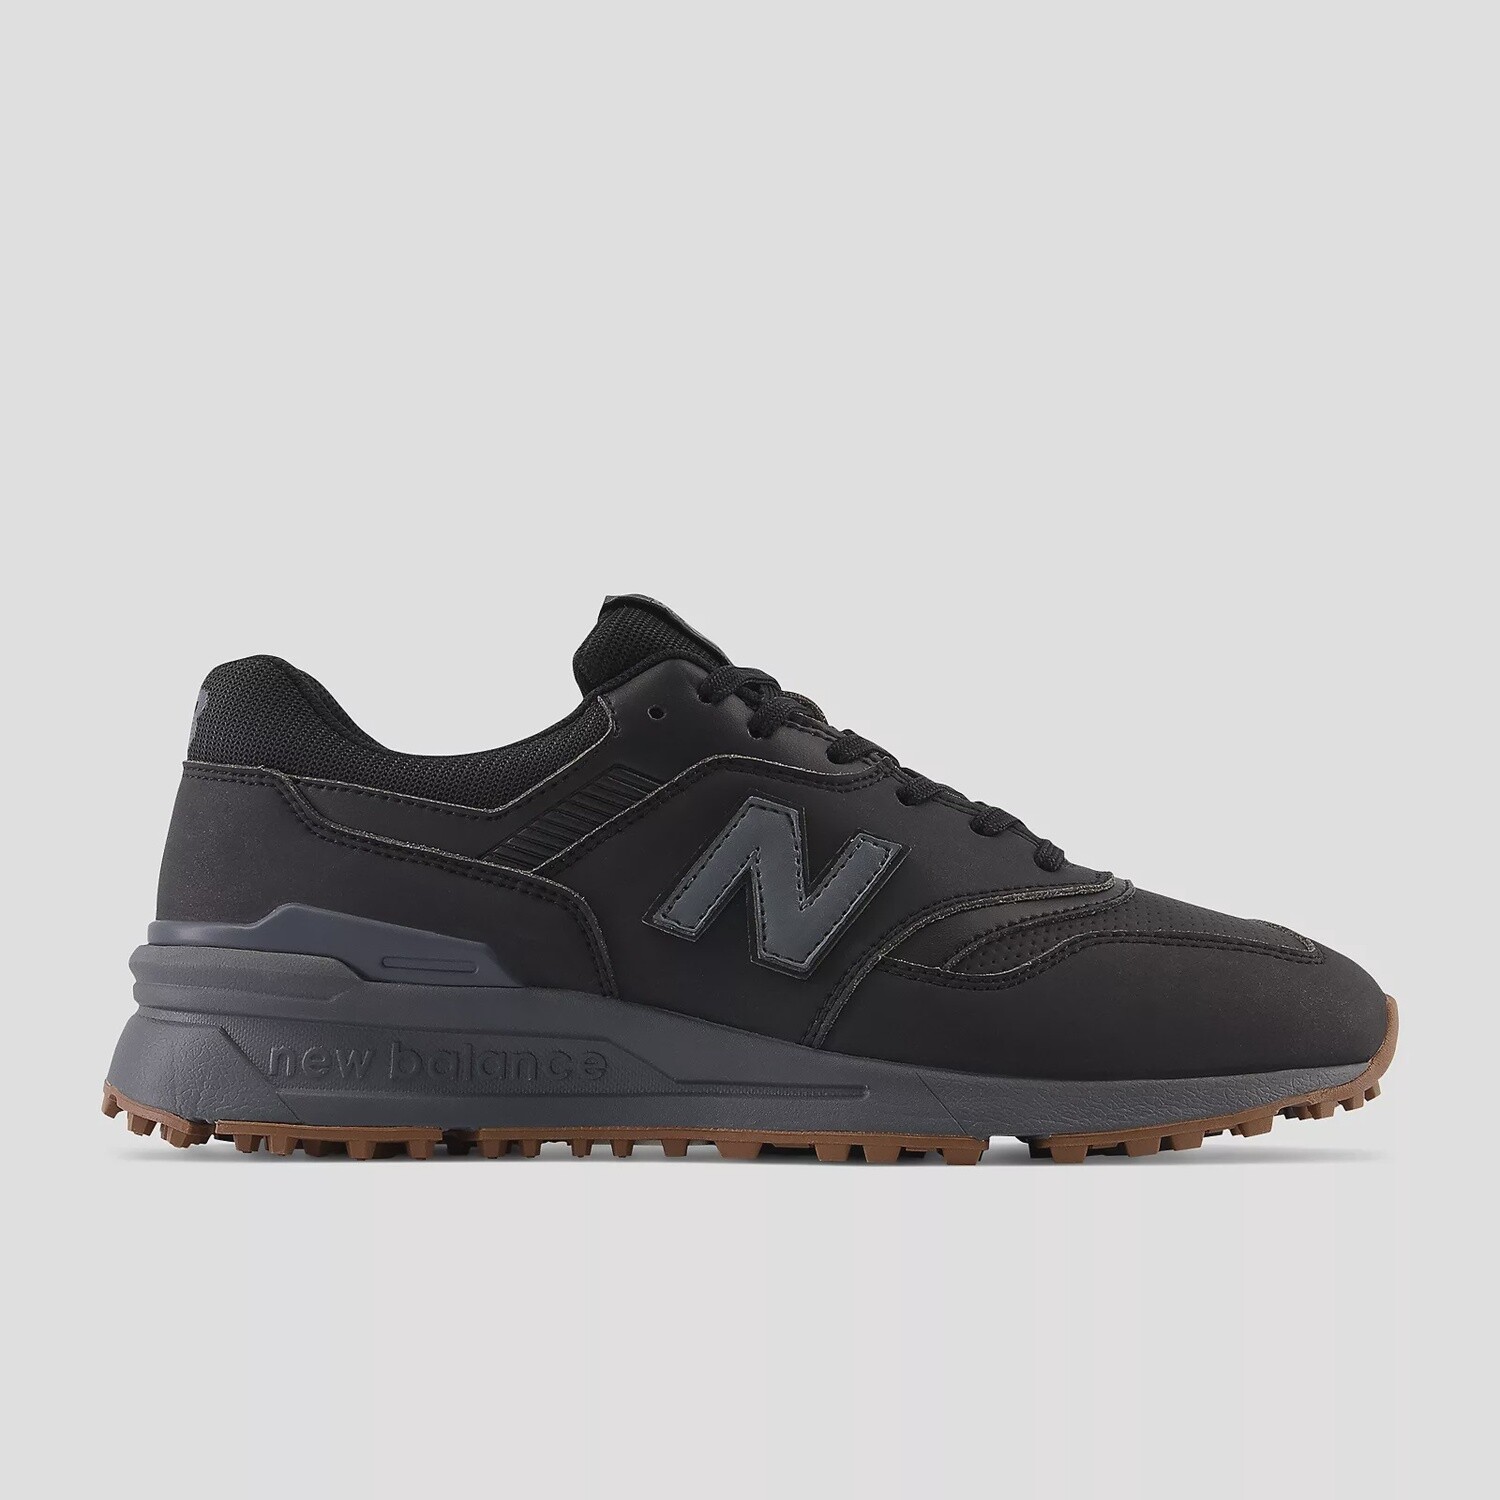 New Balance 997 SL Spikeless Shoe